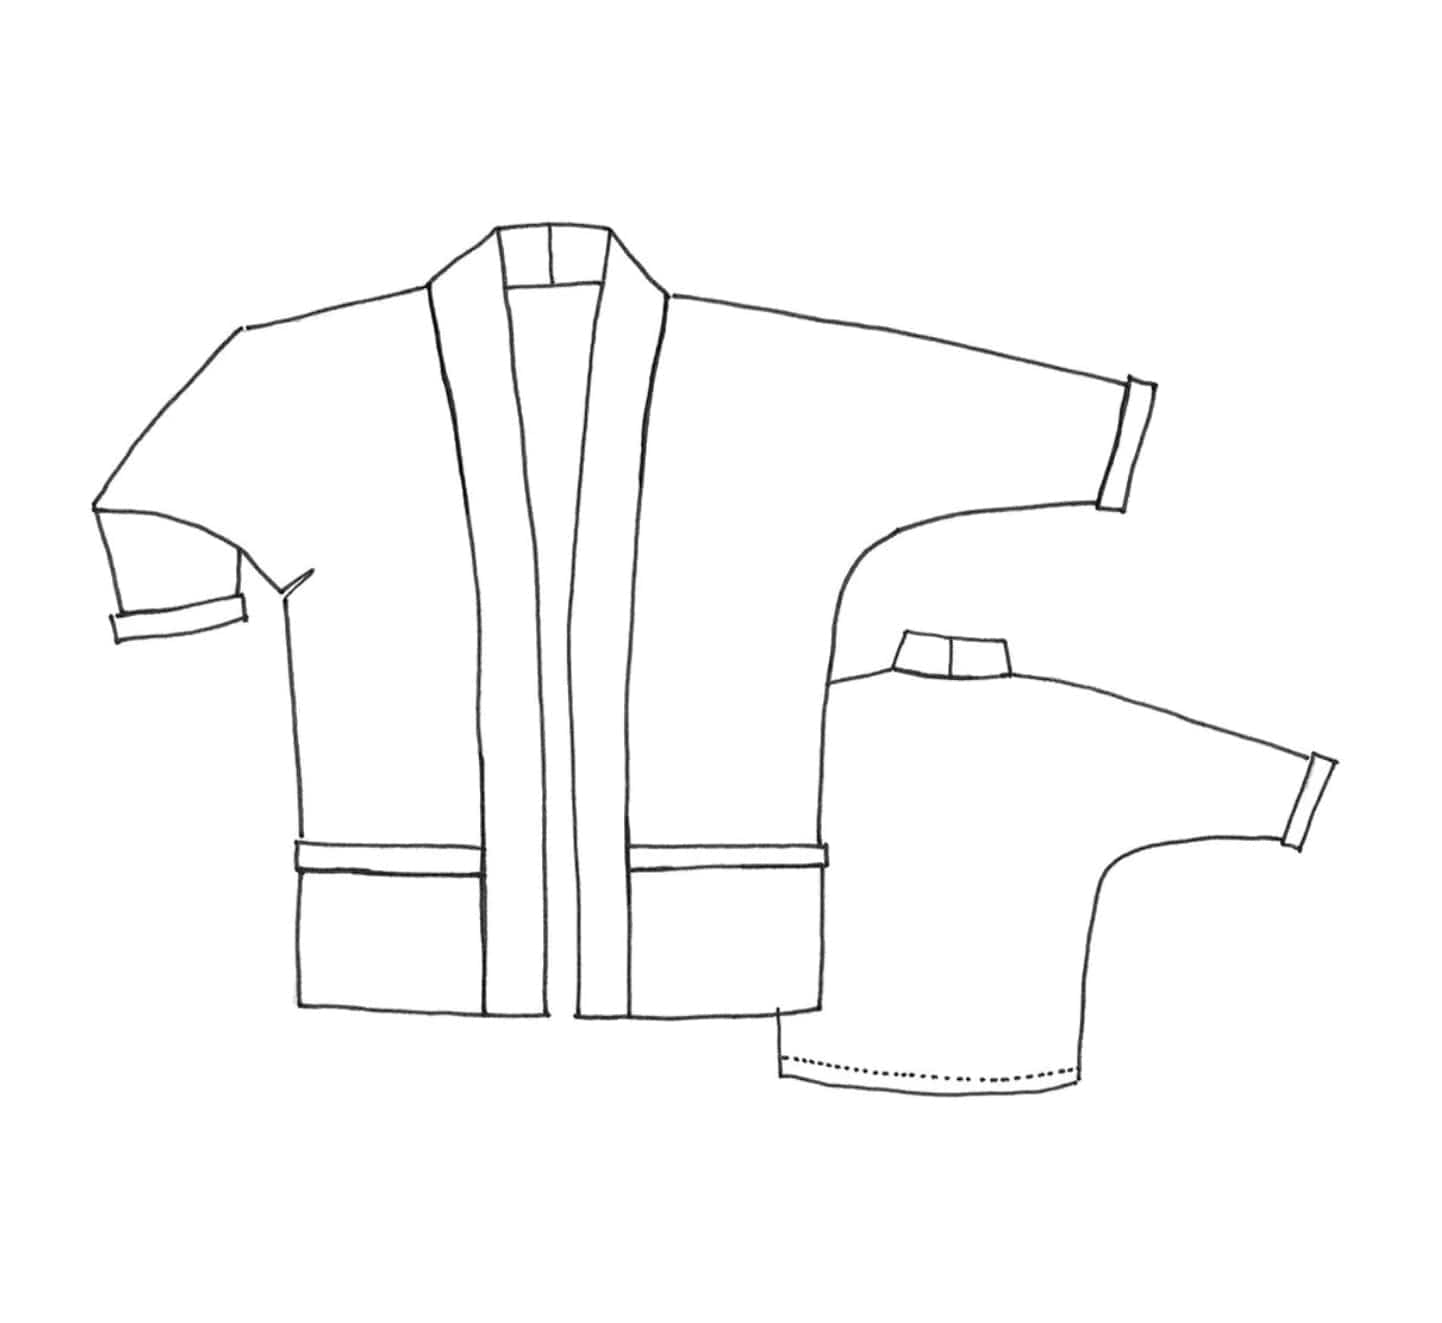 Tessuti Patterns: Tokyo Jacket